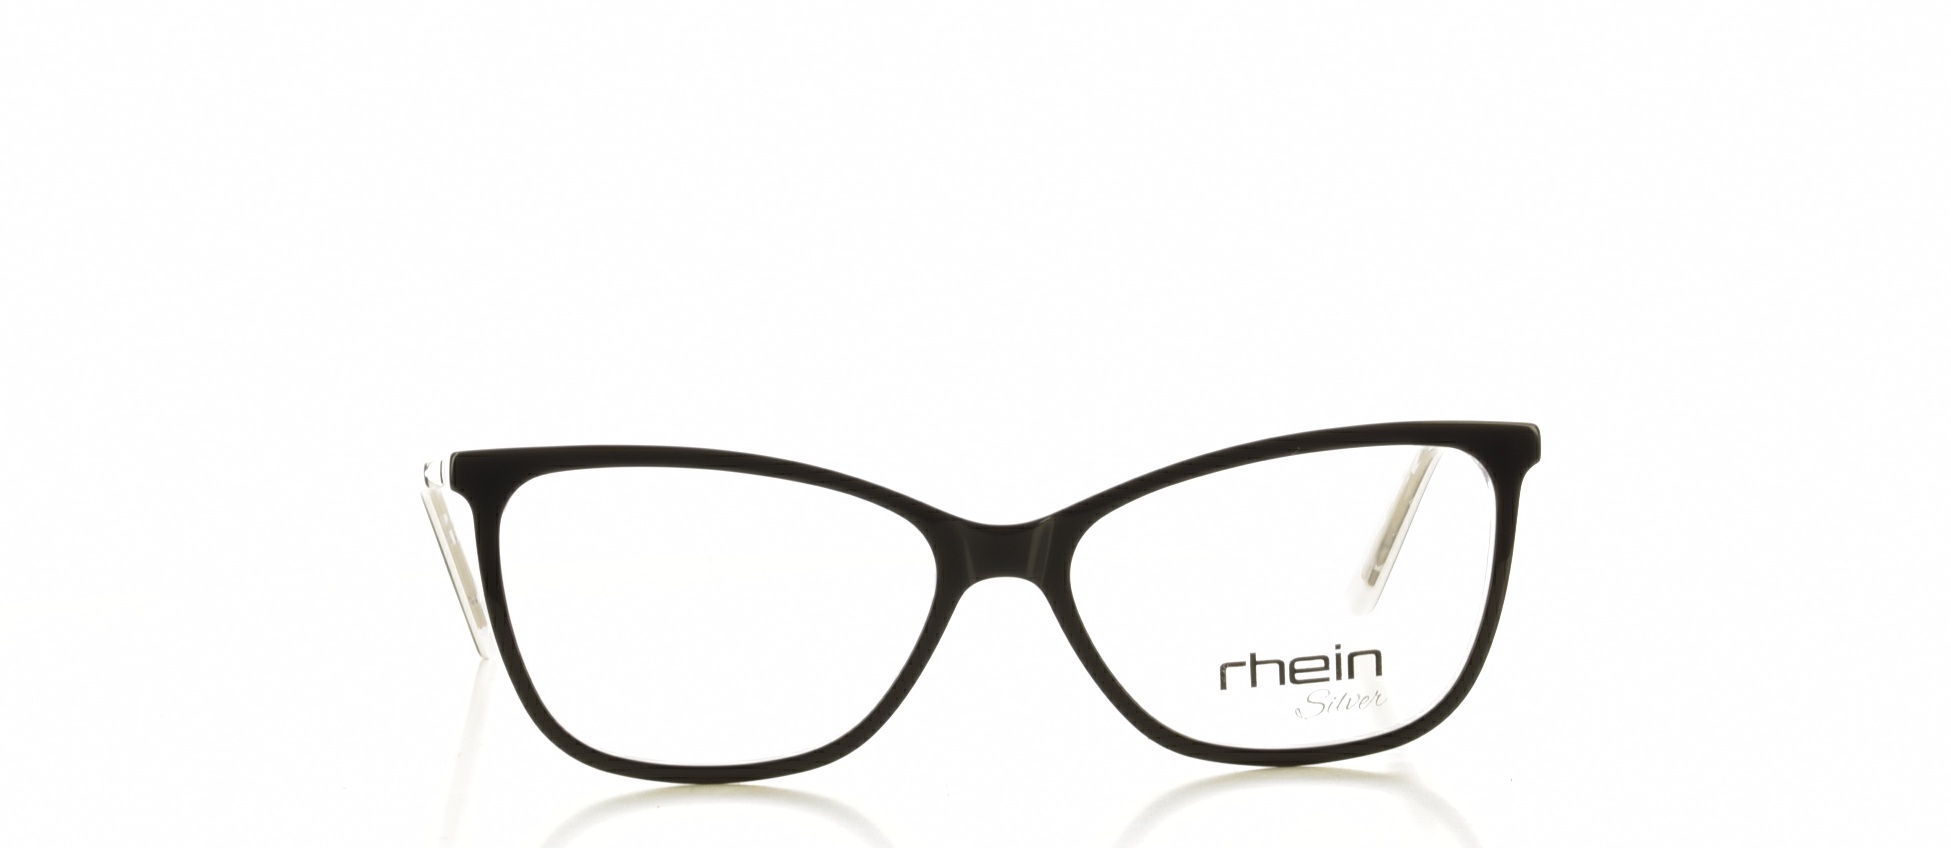 Rama ochelari vedere Rhein 